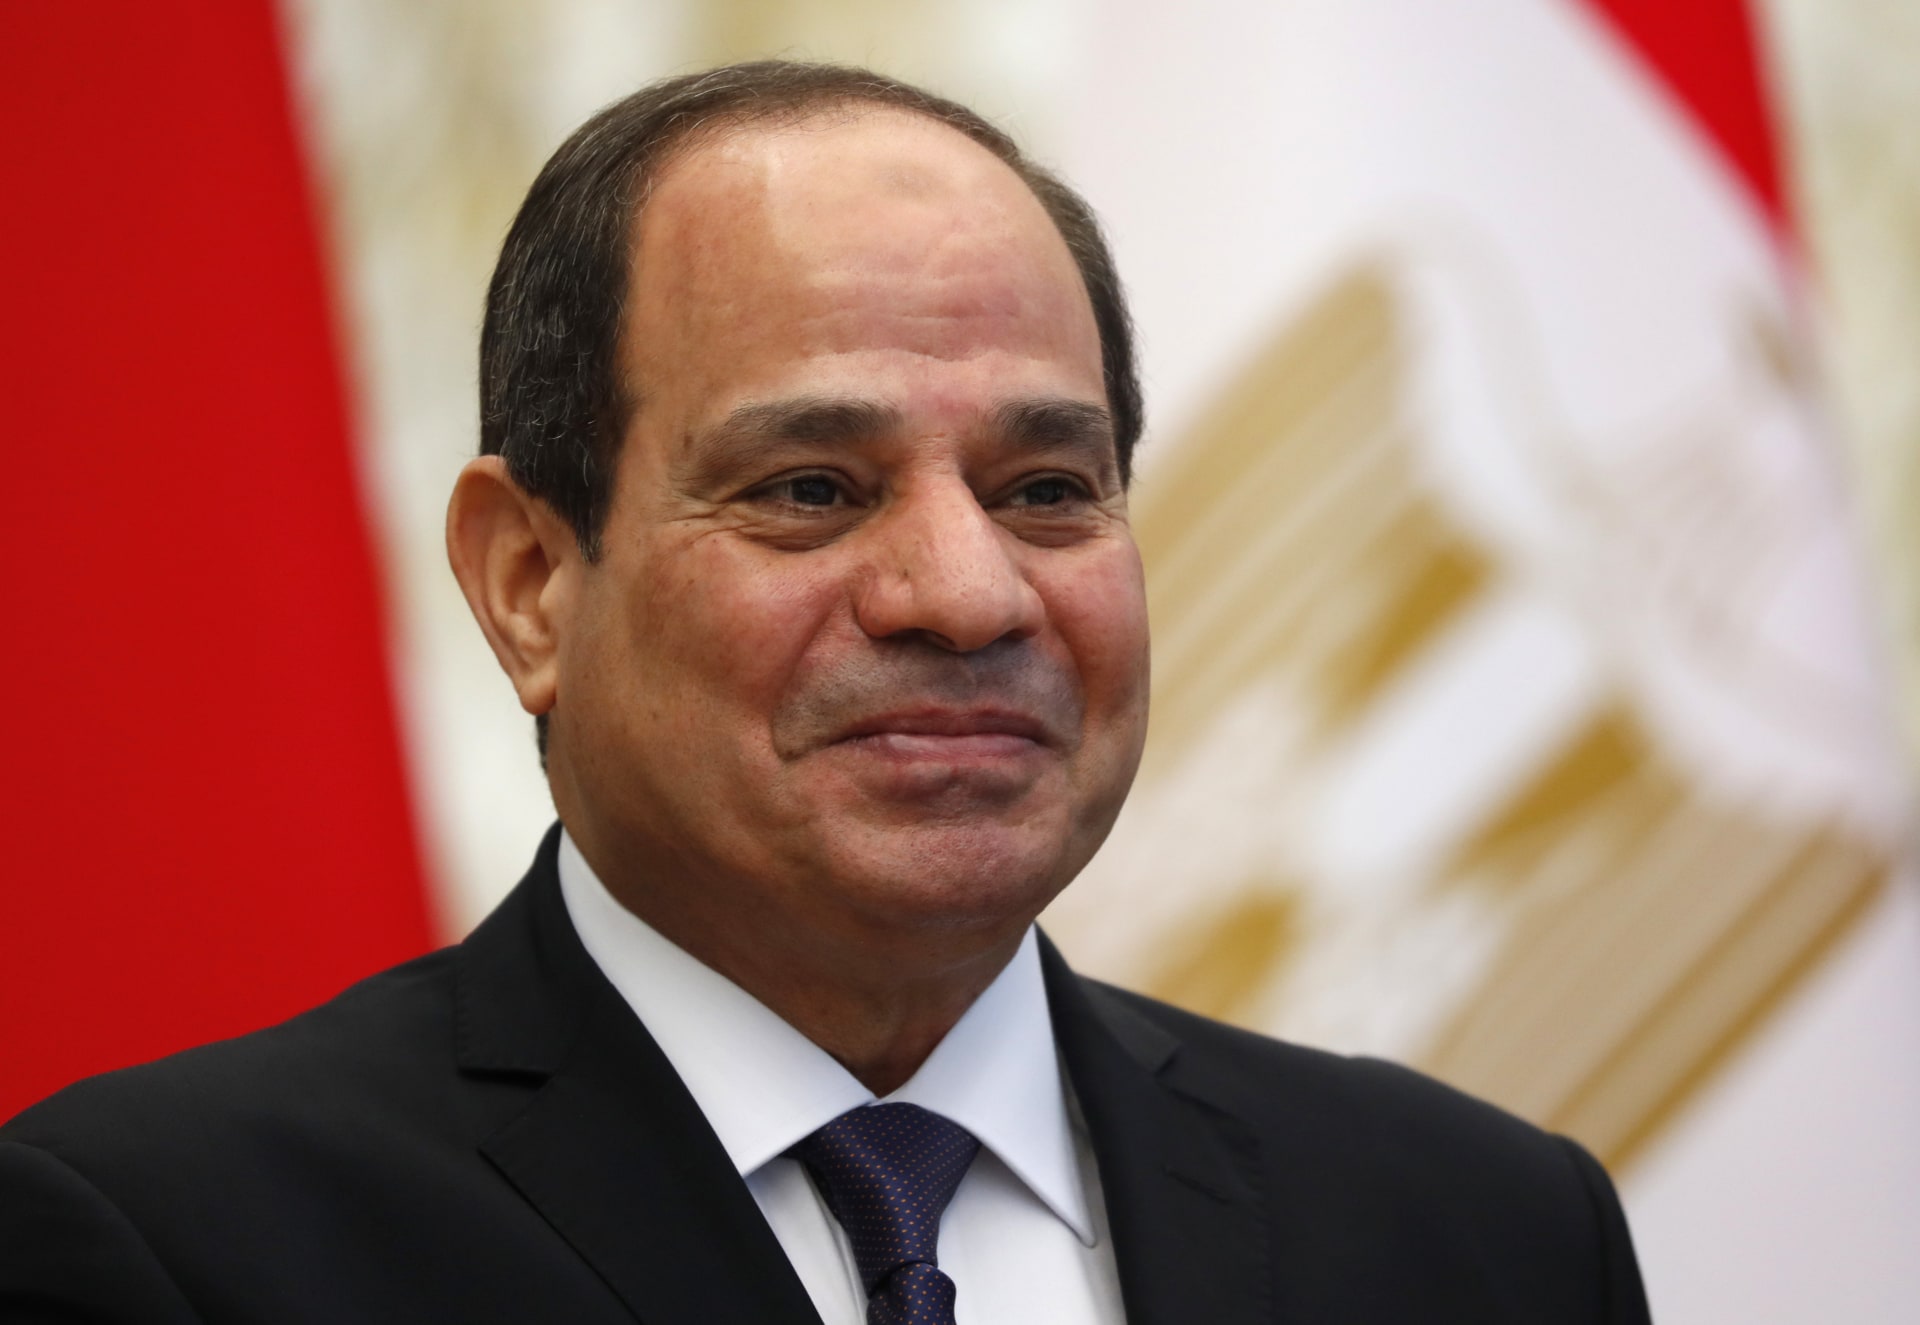 الرئيس المصري يفتتح اجتماعات "البنك الإفريقي للتنمية" بمدينة شرم الشيخ